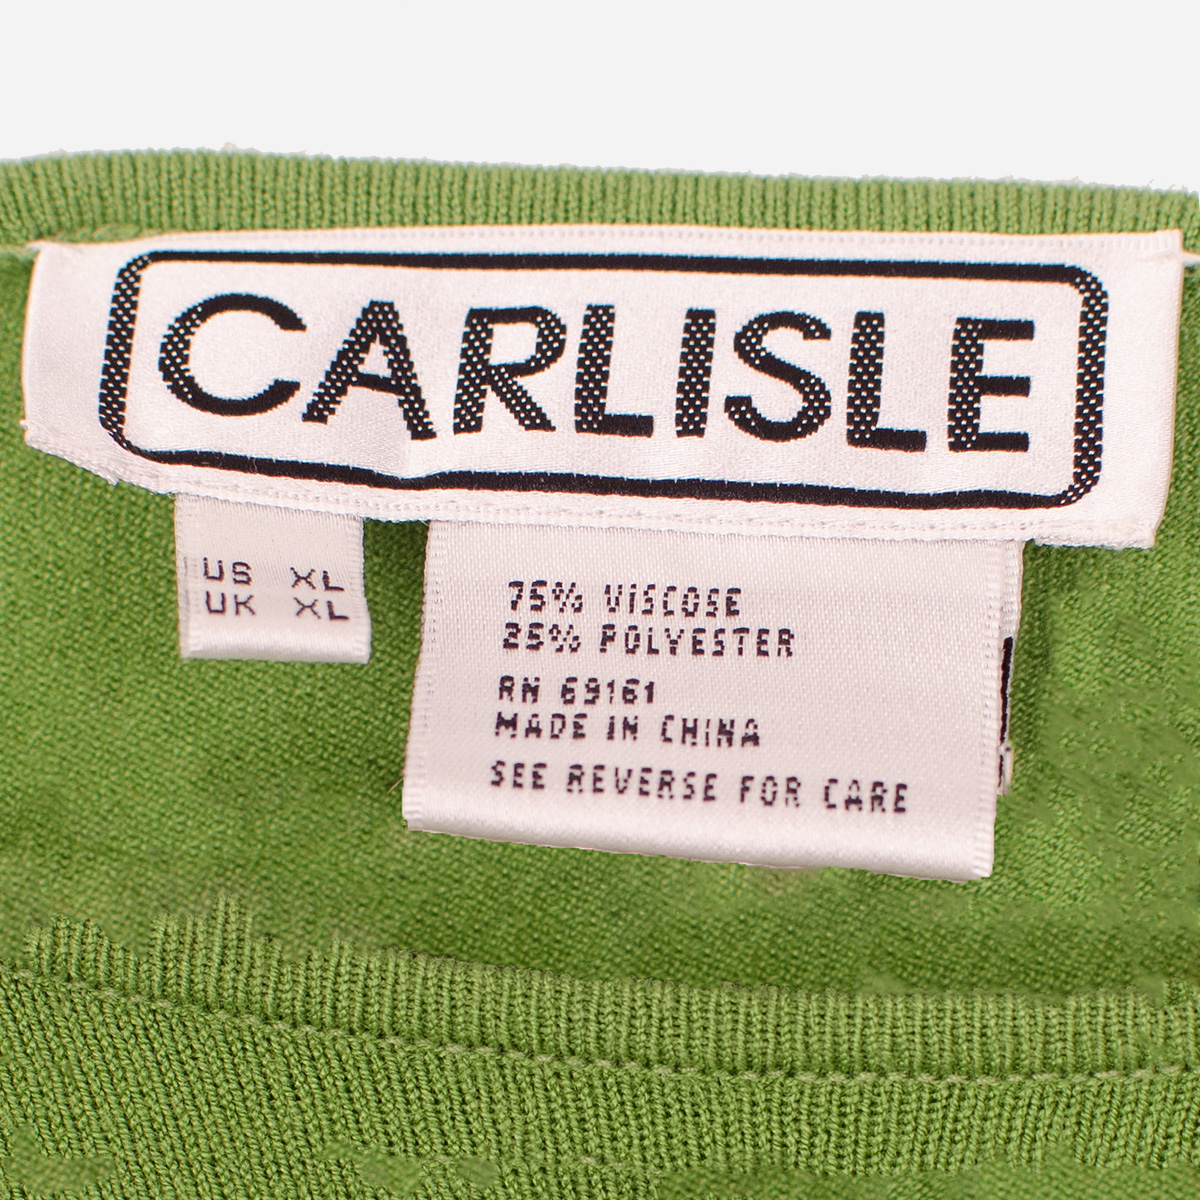 Carlisle designer clothing